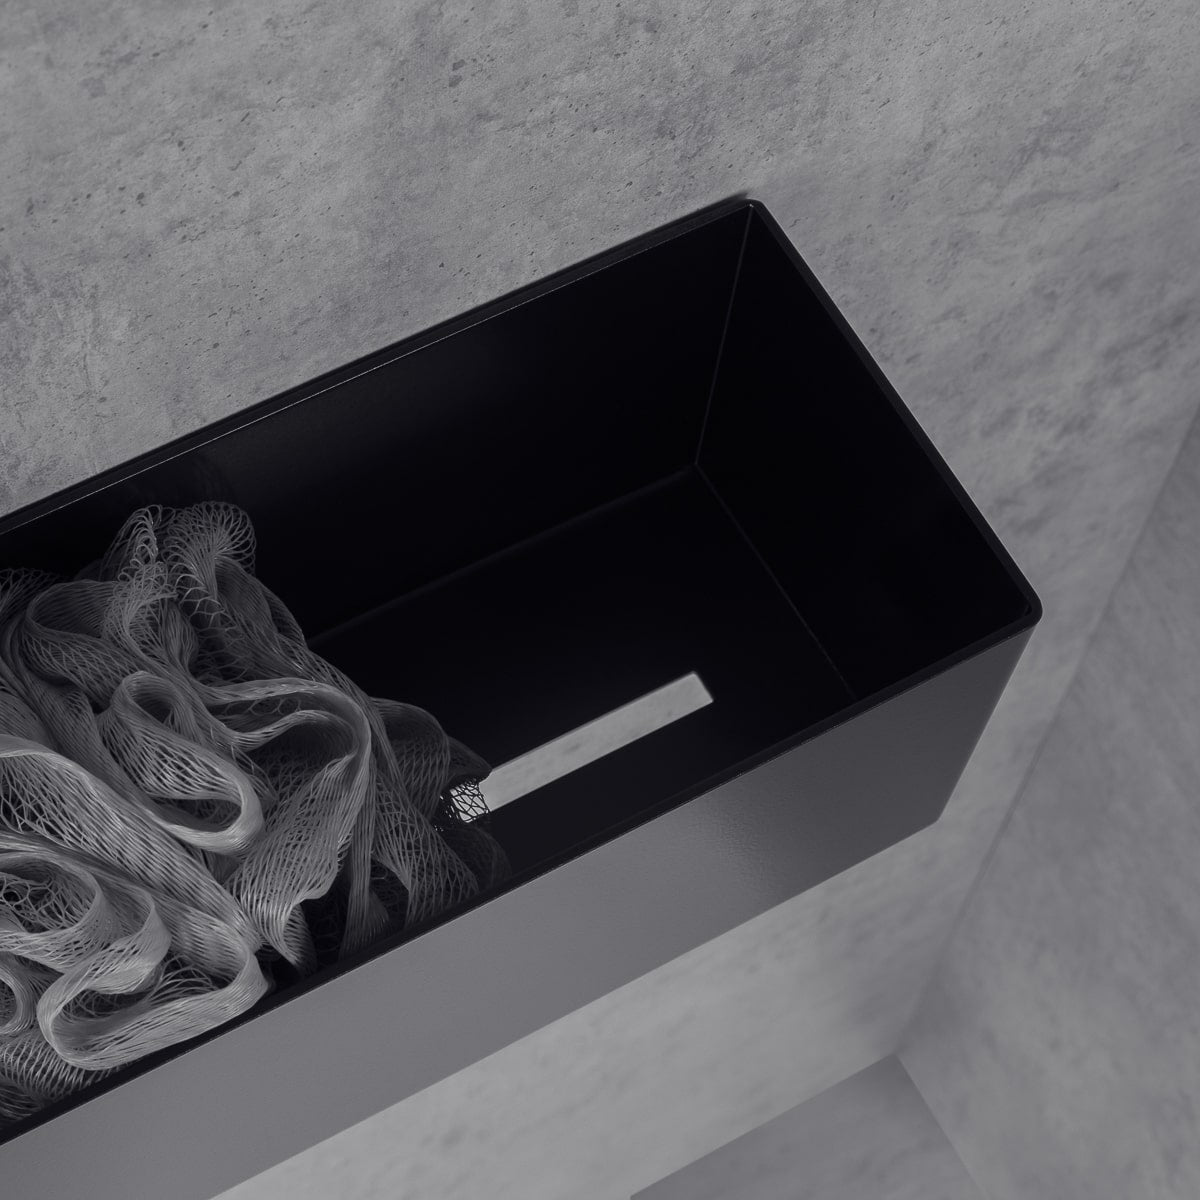 black bathroom shelf-organizer basket